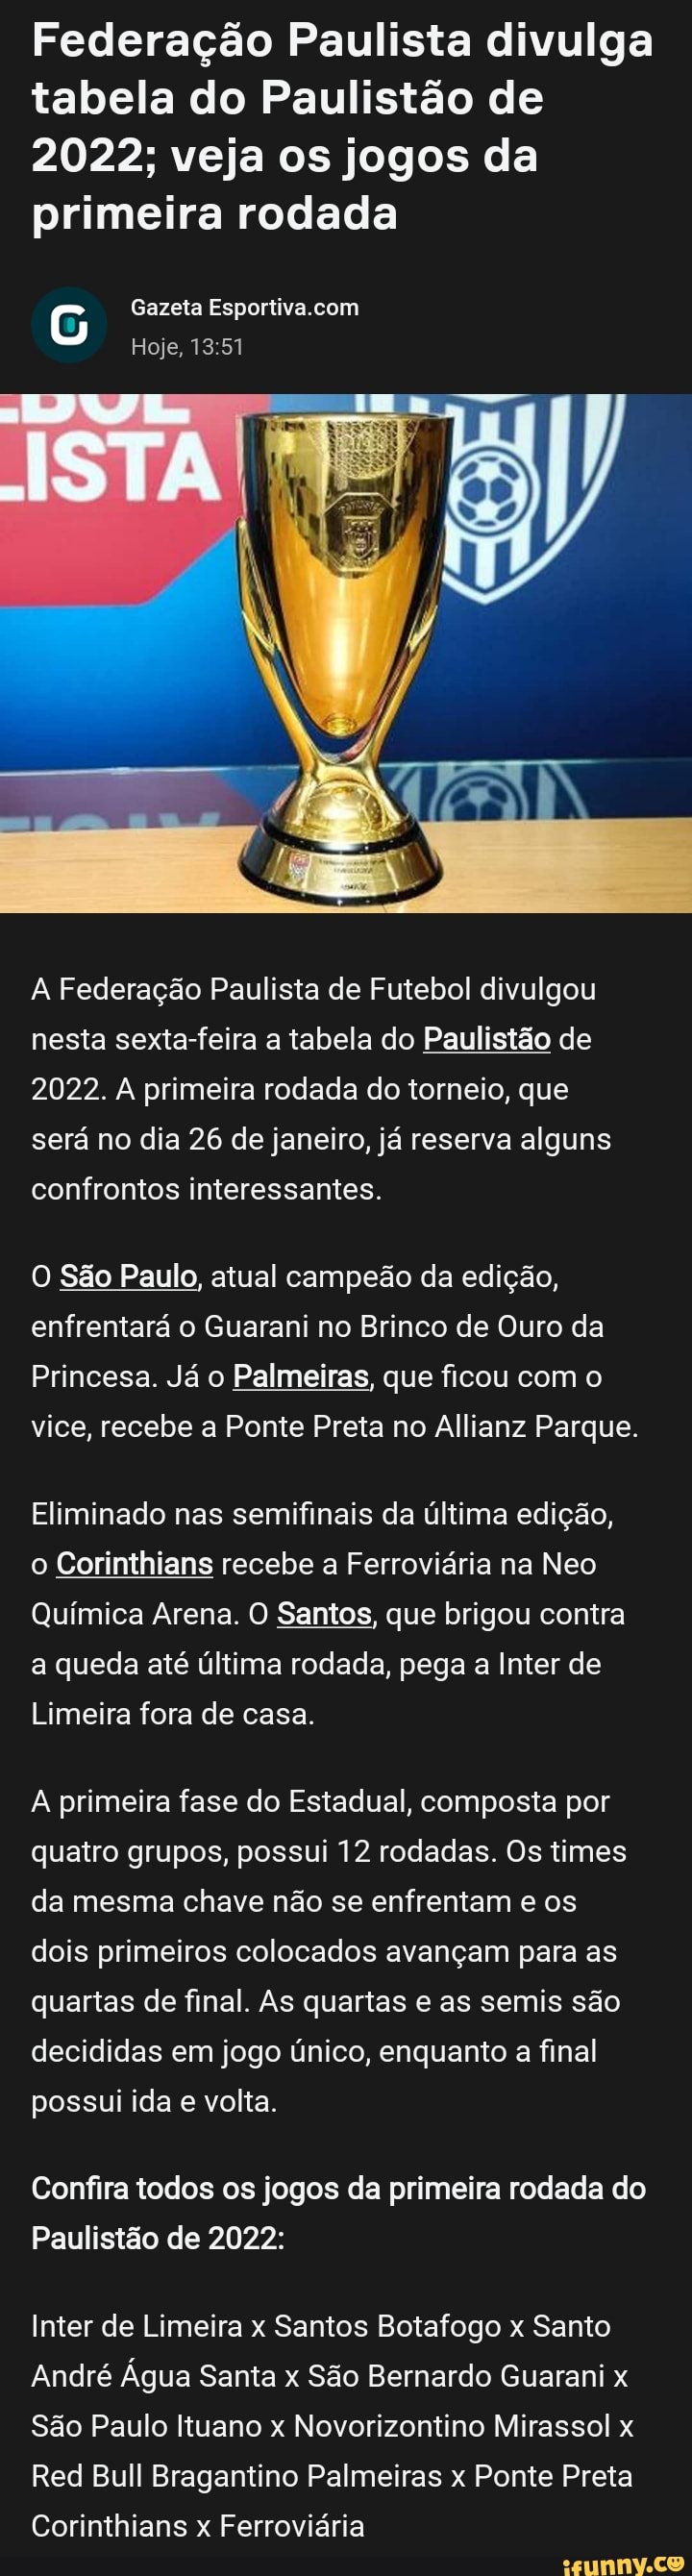 Veja como ficaram as quartas de final do Paulistão; Botafogo está